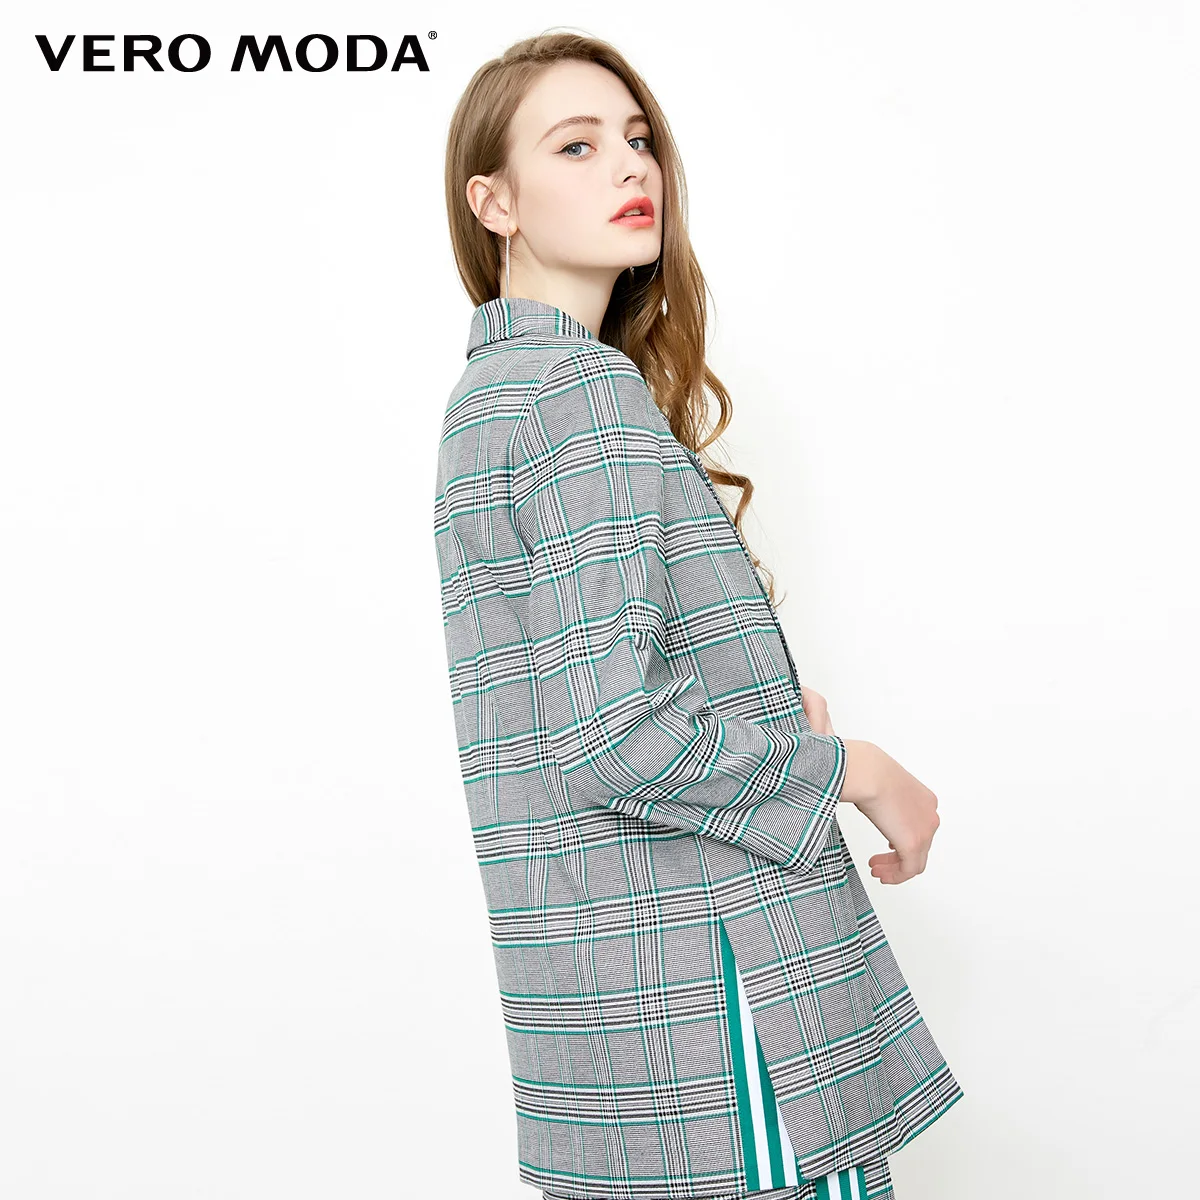 Vero Moda для женщин досуг осень Блейзер костюм пальто куртка | 318308507